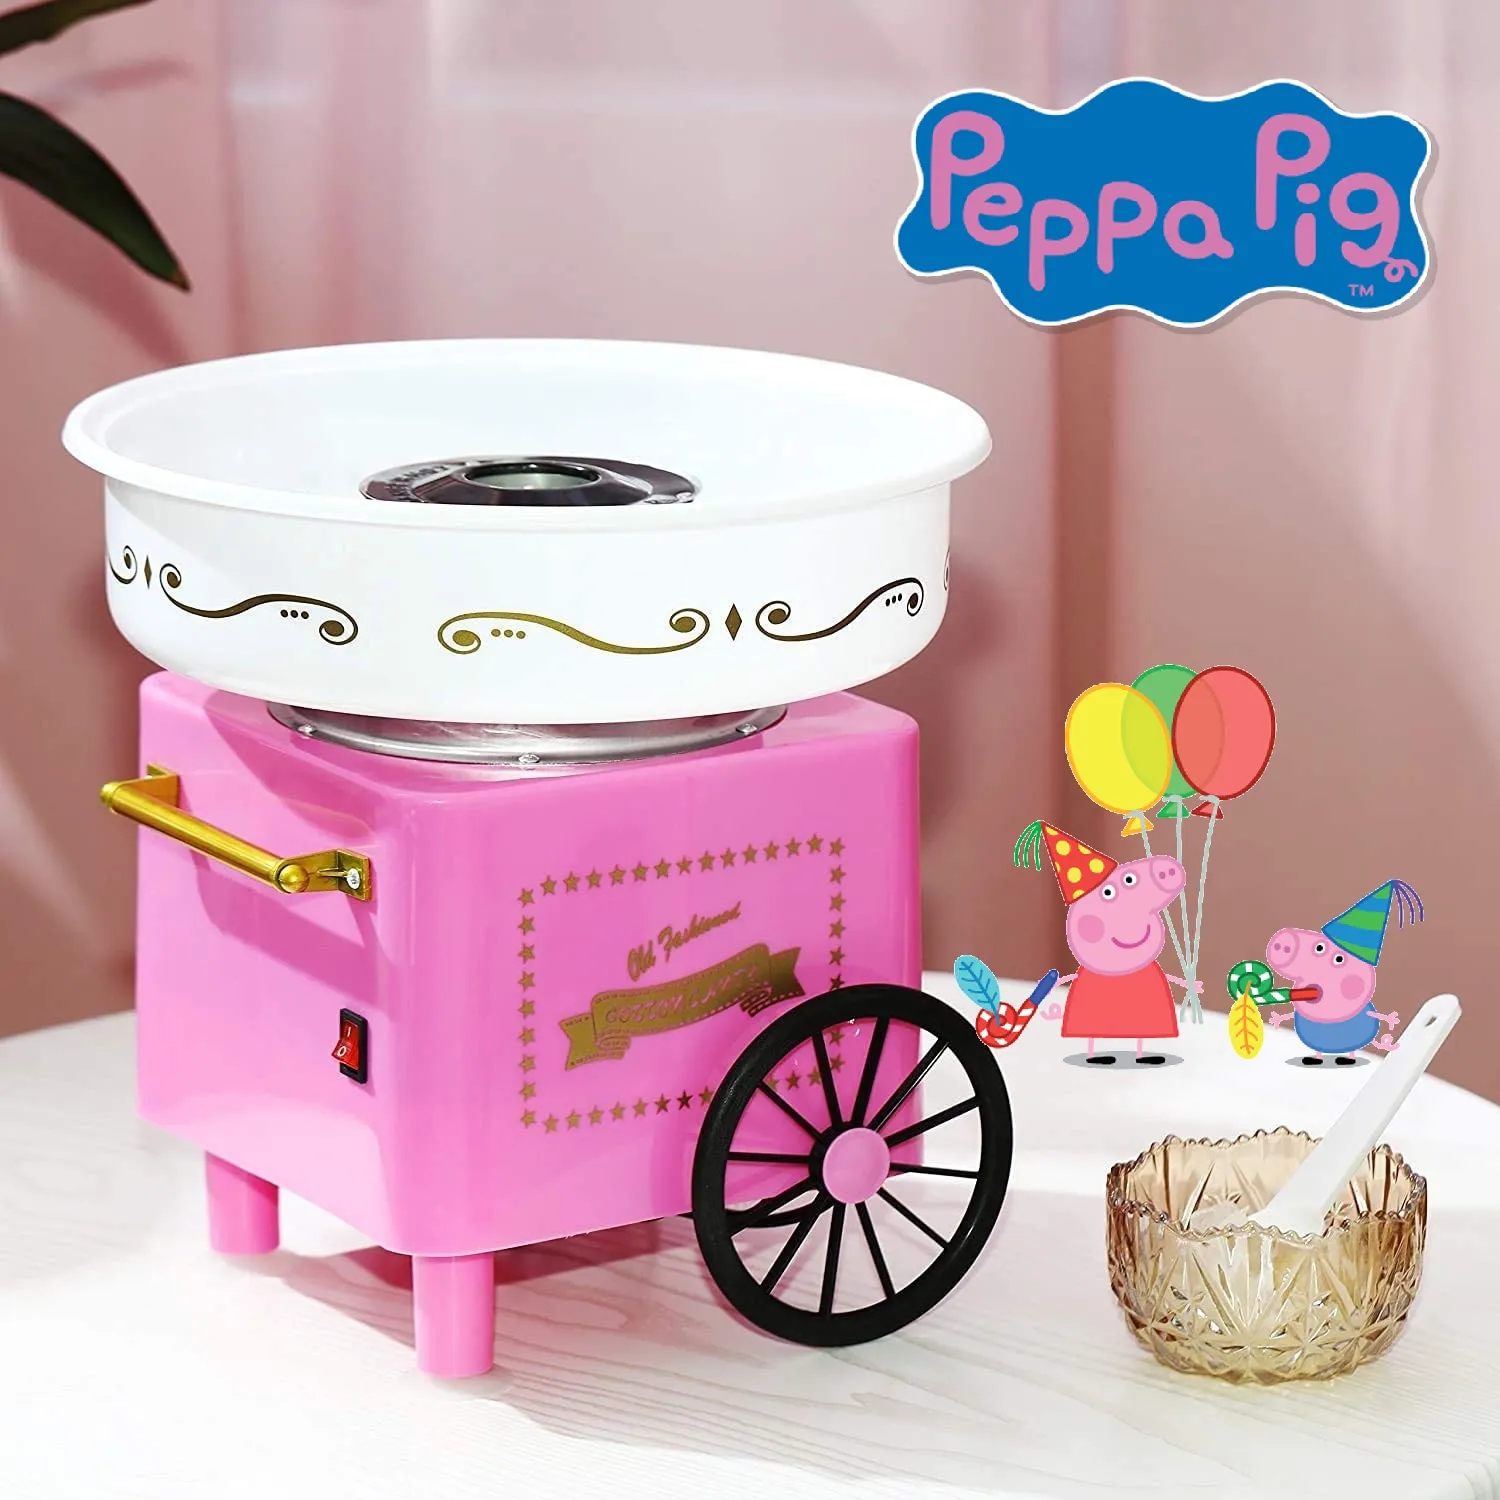 Машина за захарен памук, розова, 520W РЕТРО ДИЗАЙН, Пепа Пиг, Peppa Pig 1